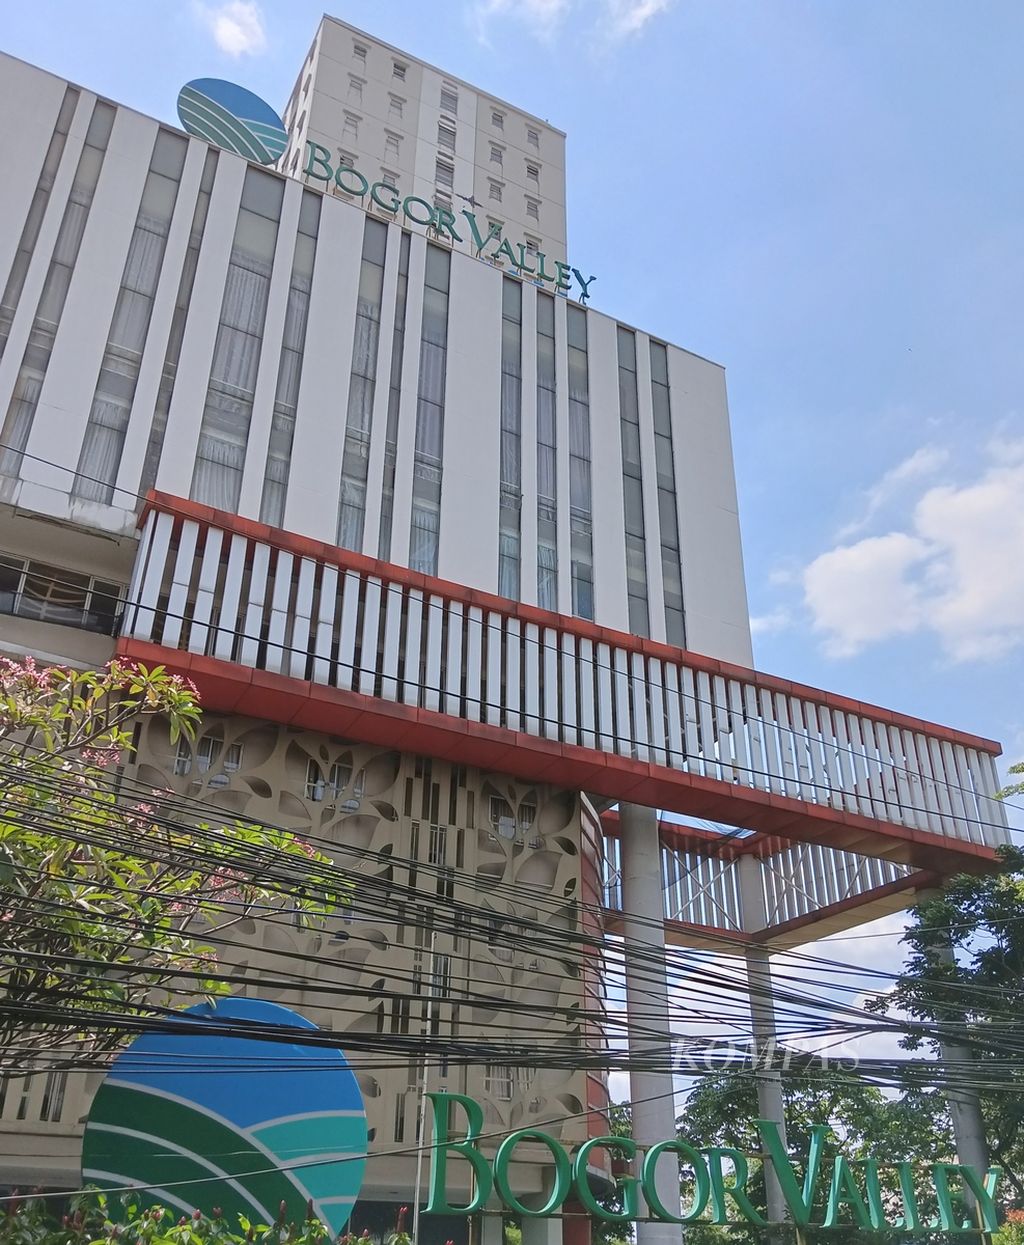 Hotel dan apartemen Bogor Valley di Kota Bogor, Jawa Barat, kerap menjadi lokasi prostitusi daring. Pada Senin (3/4/2023) sekitar pukul 02.00, Polresta Bogor menangkap dua tersangka praktik prostitusi daring di apartemen Bogor Valley.